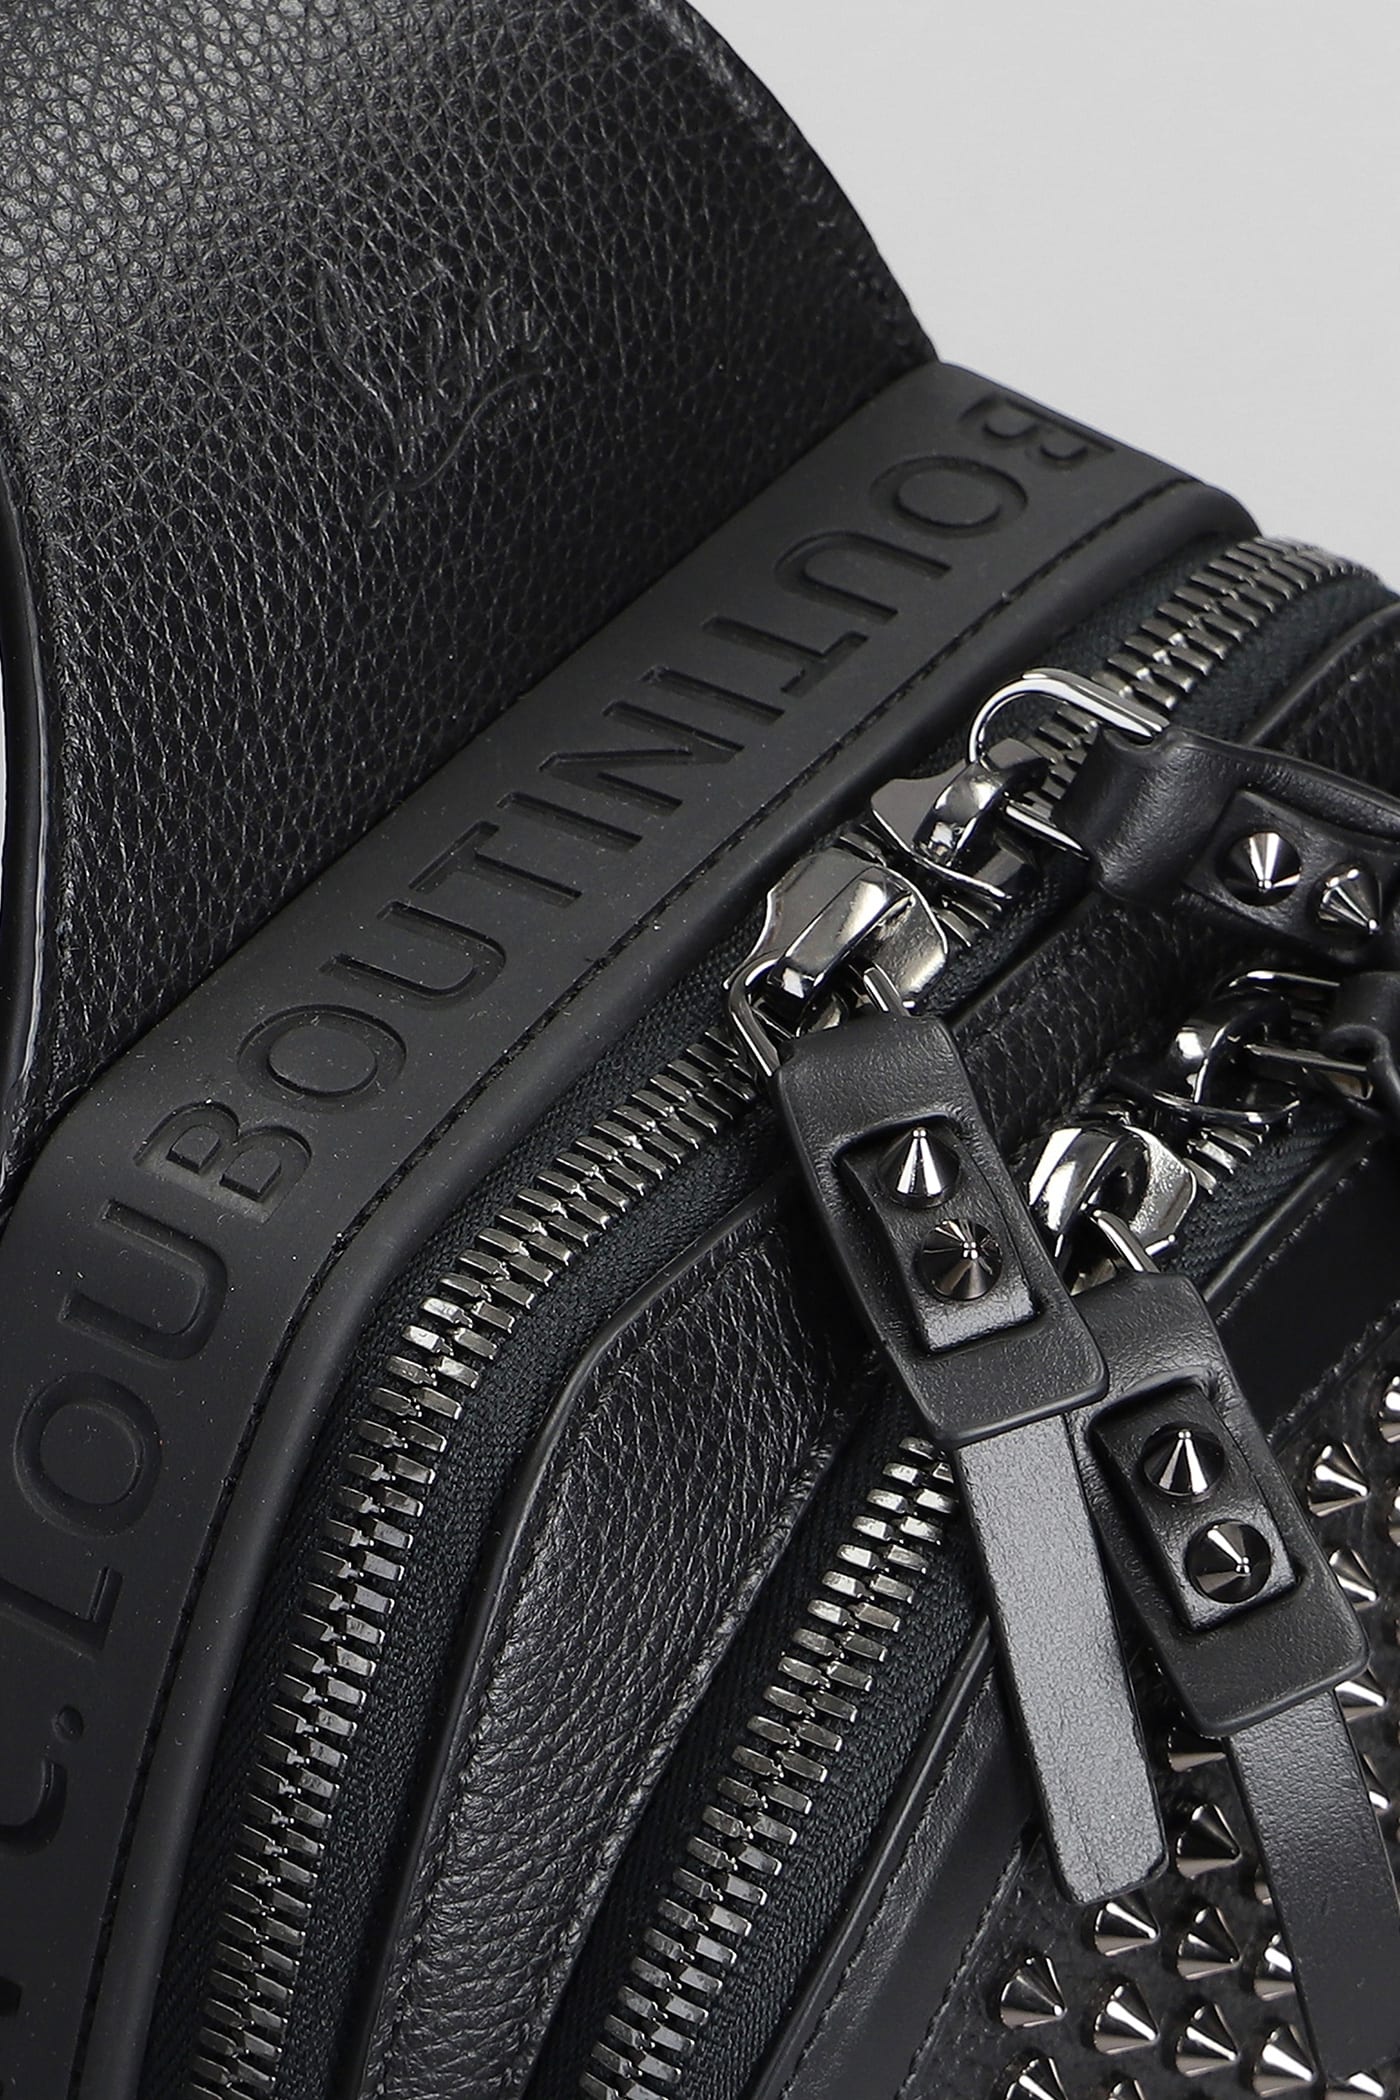 Shop Christian Louboutin Shoulder Bag In Black Leather